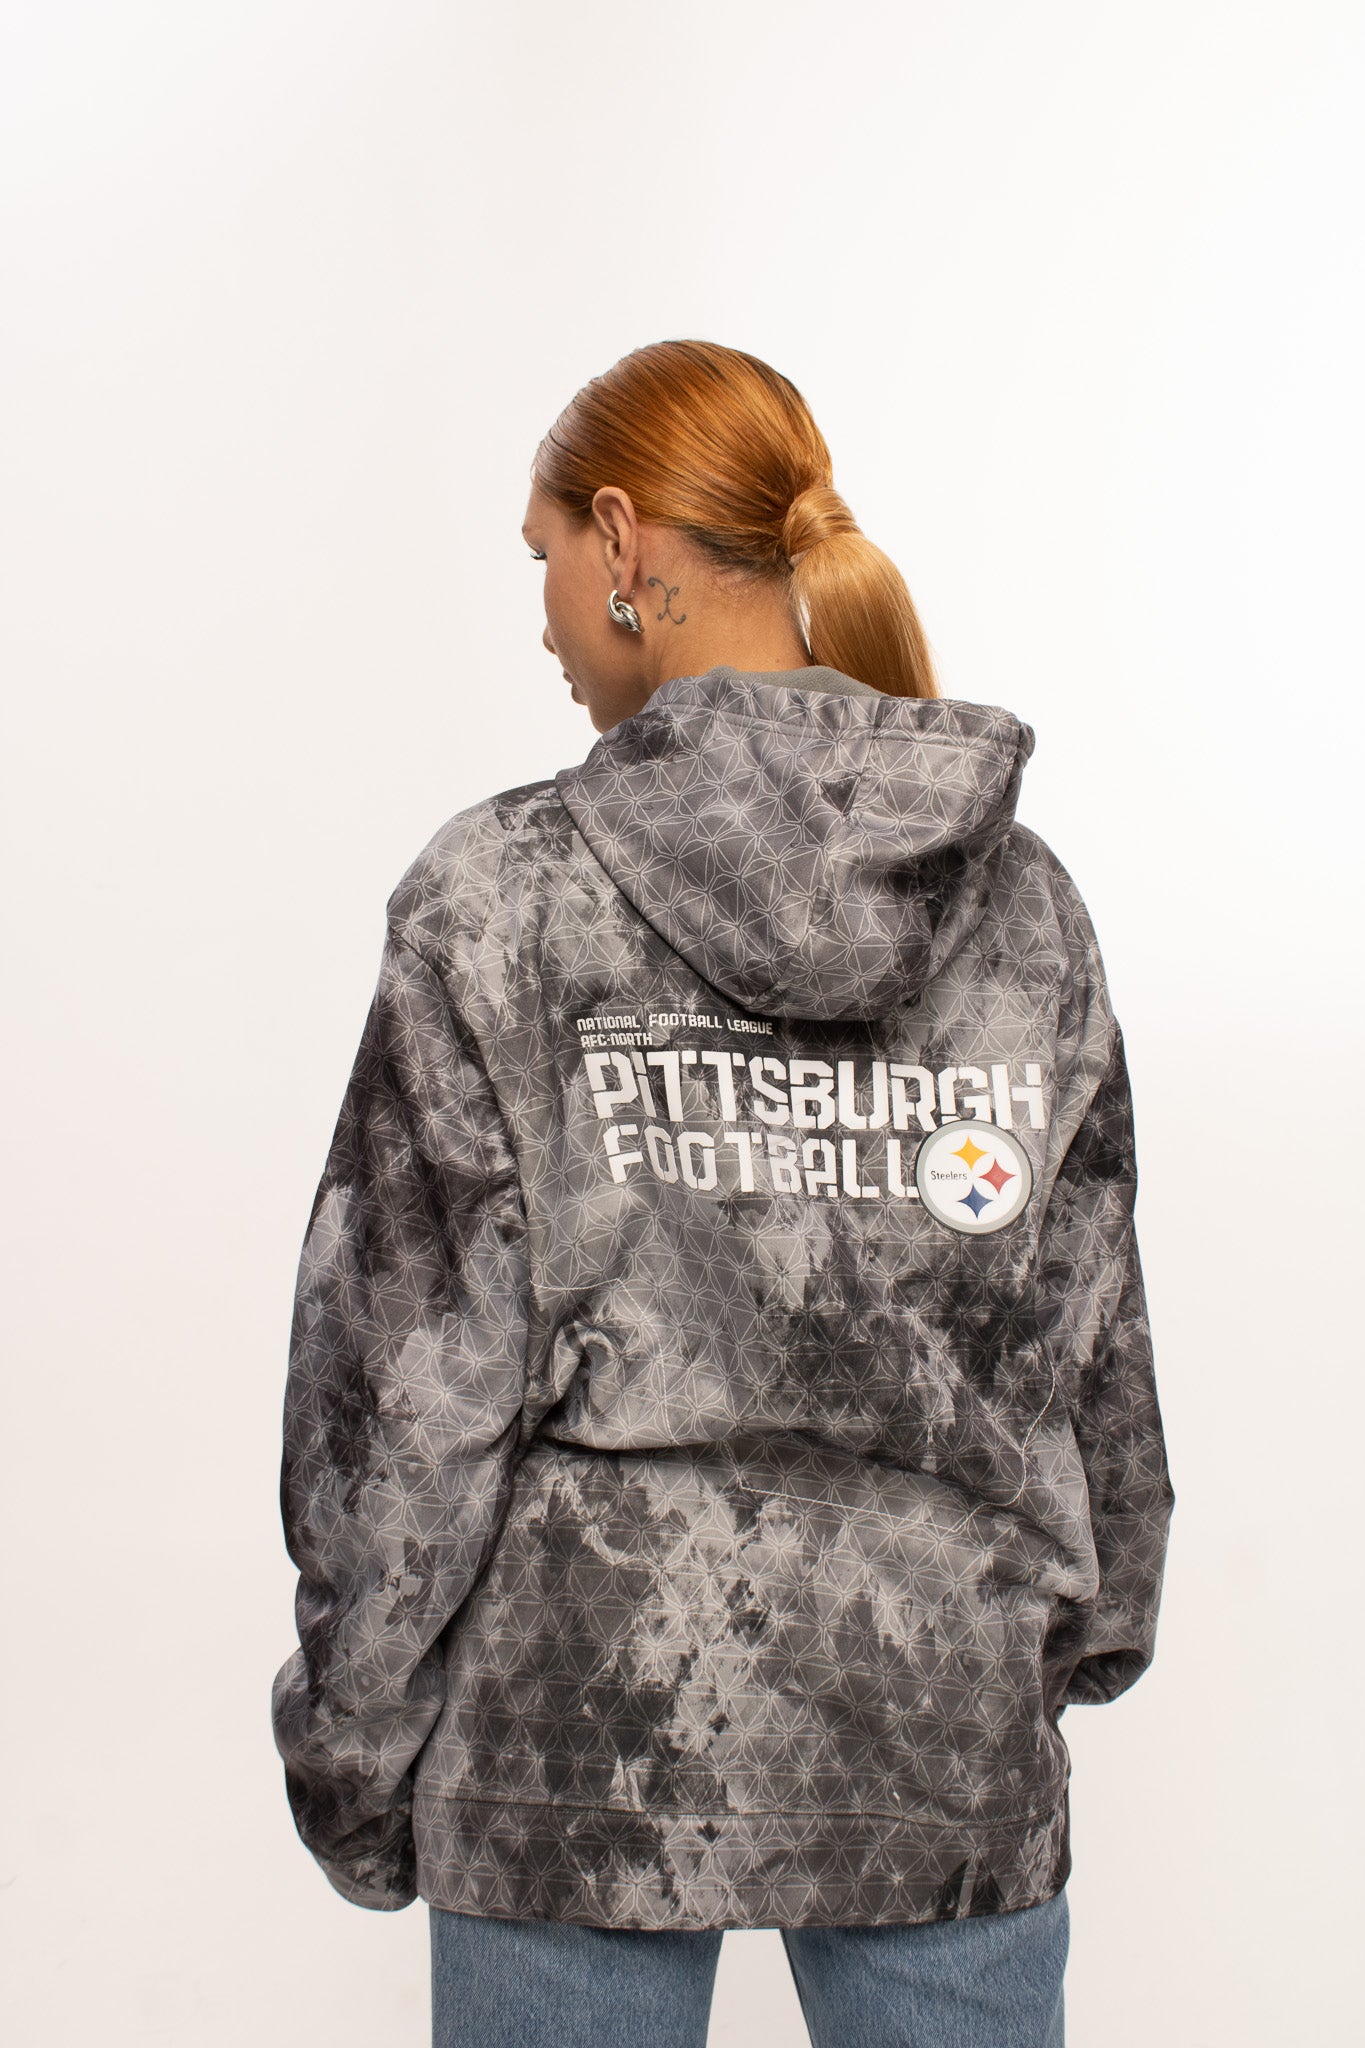 NFL REEBOK Pittsburgh STEELERS Jacket